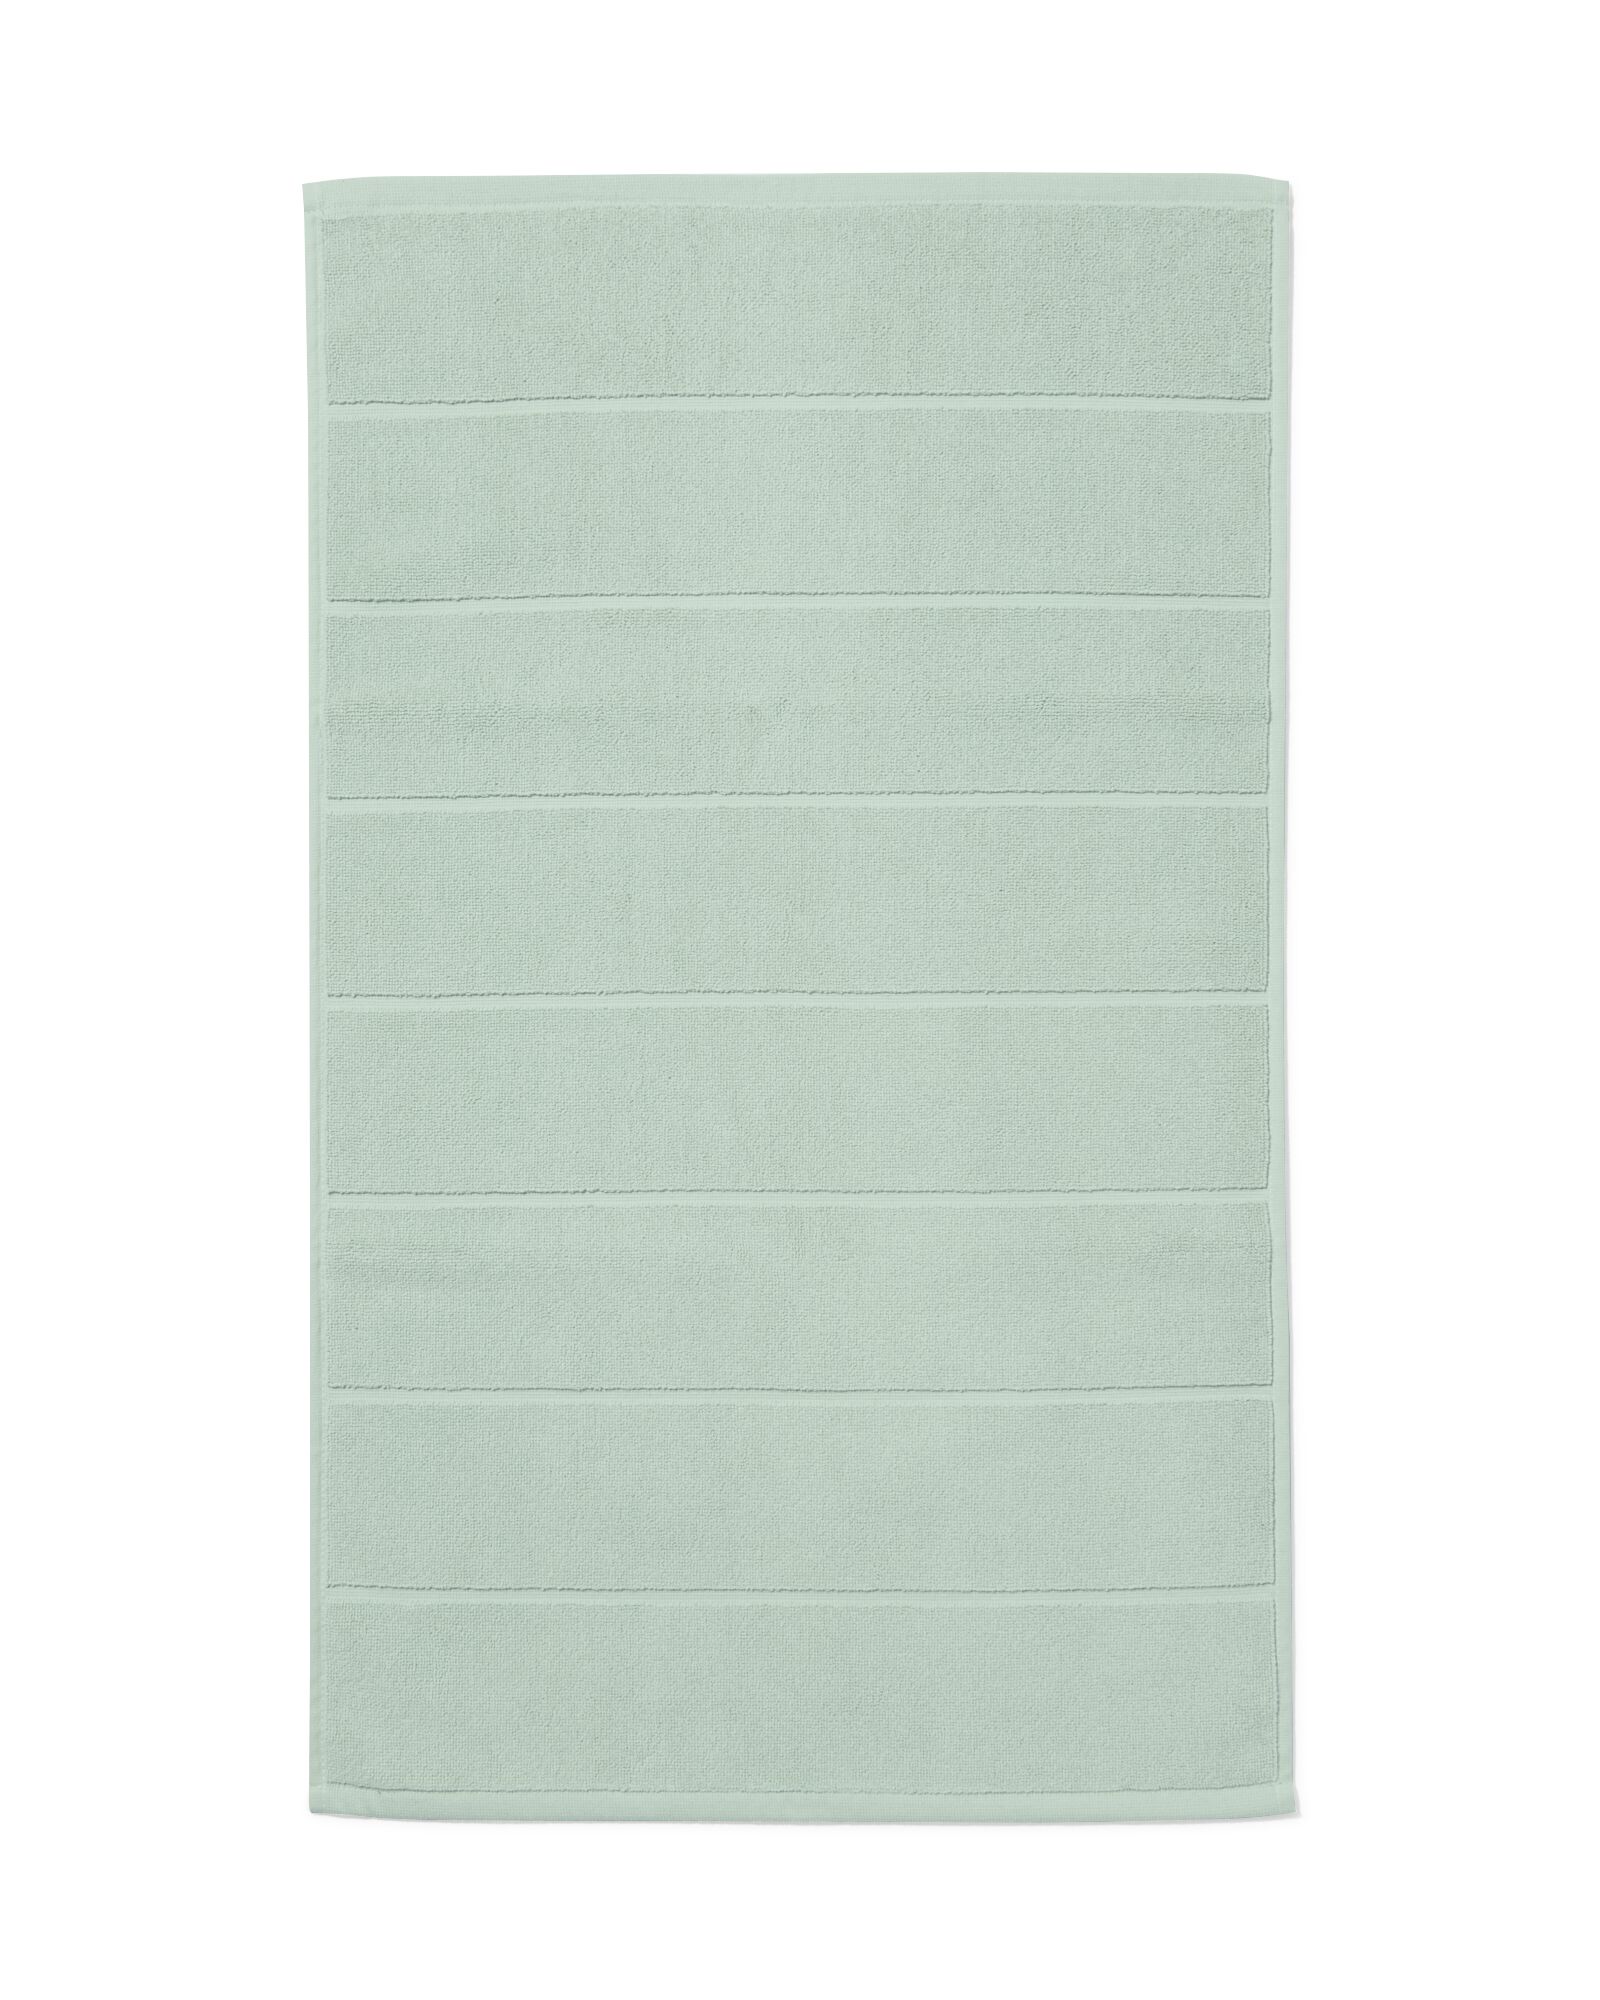 hema tapis de bain 50x85 qualité épaisse vert poudré (vert clair)